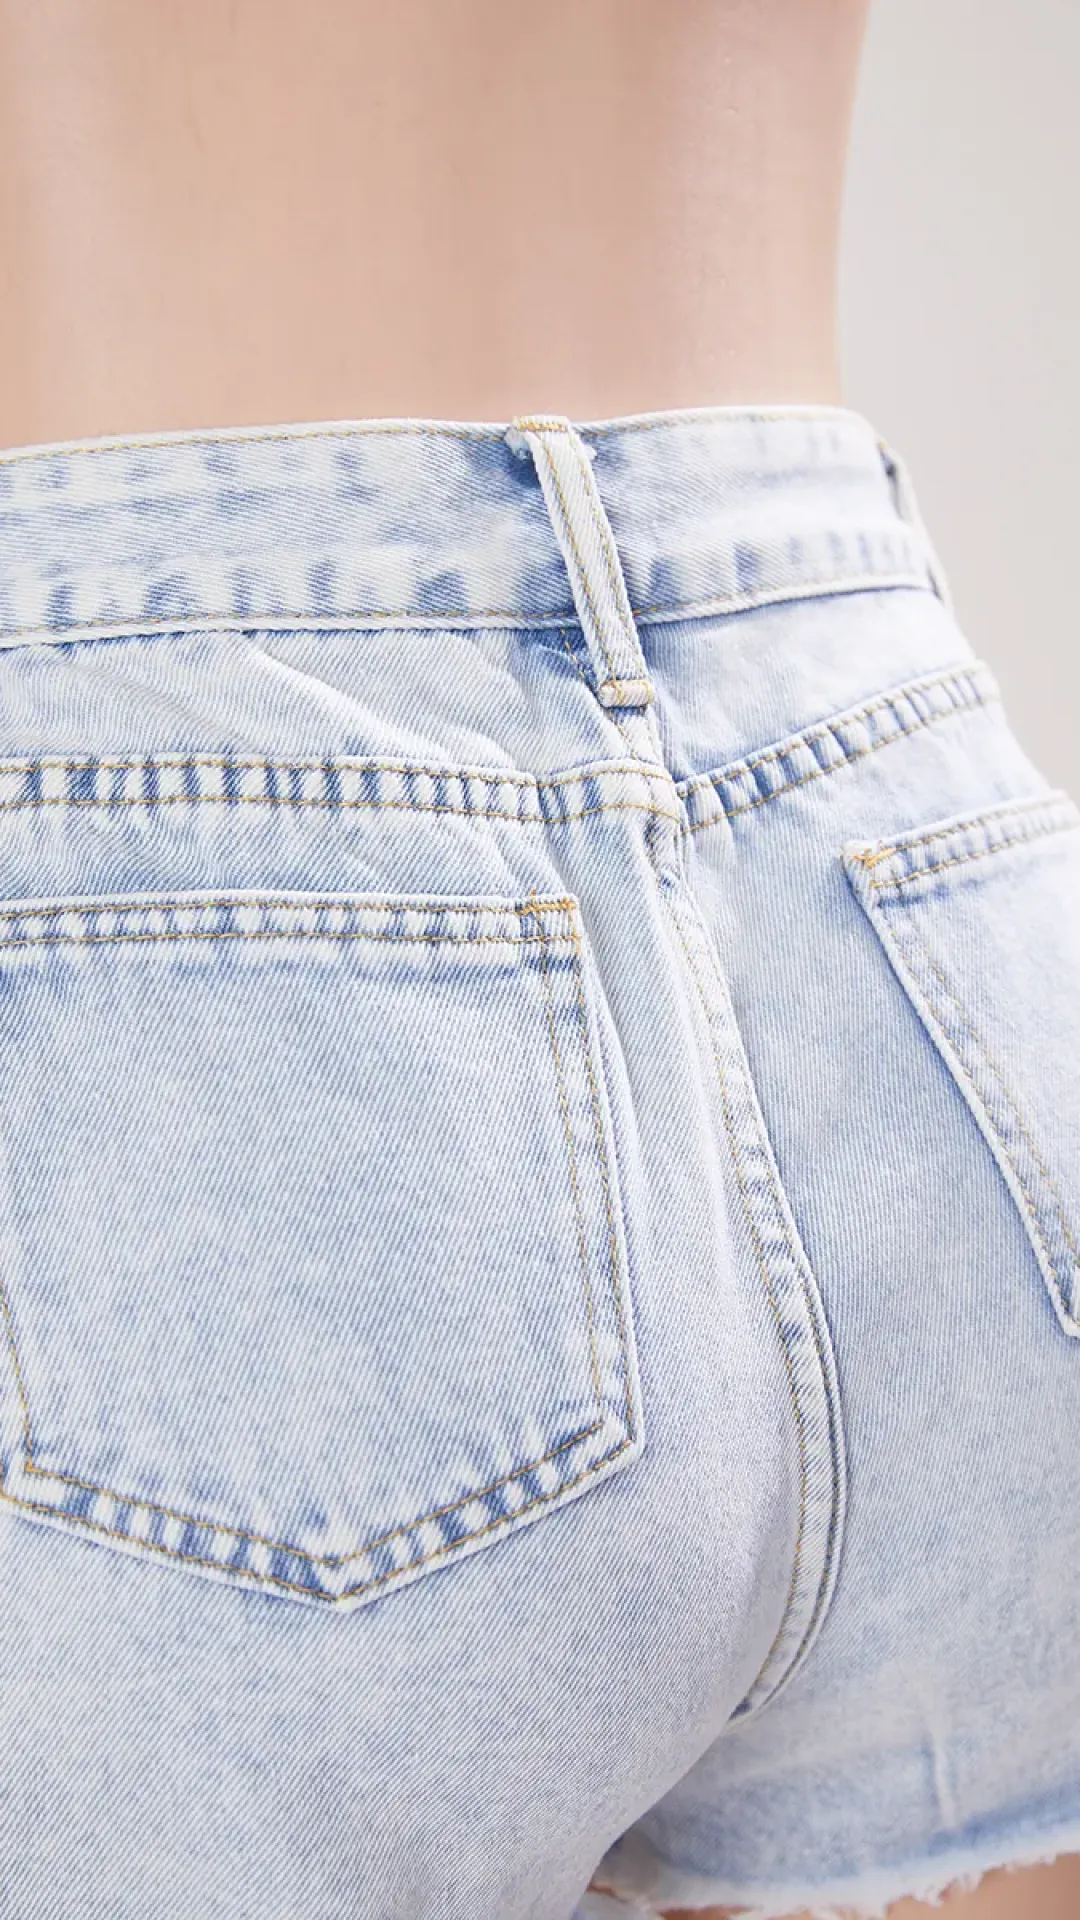 Shorts de mezclilla informales, no elásticos, con cintura alta y agujeros